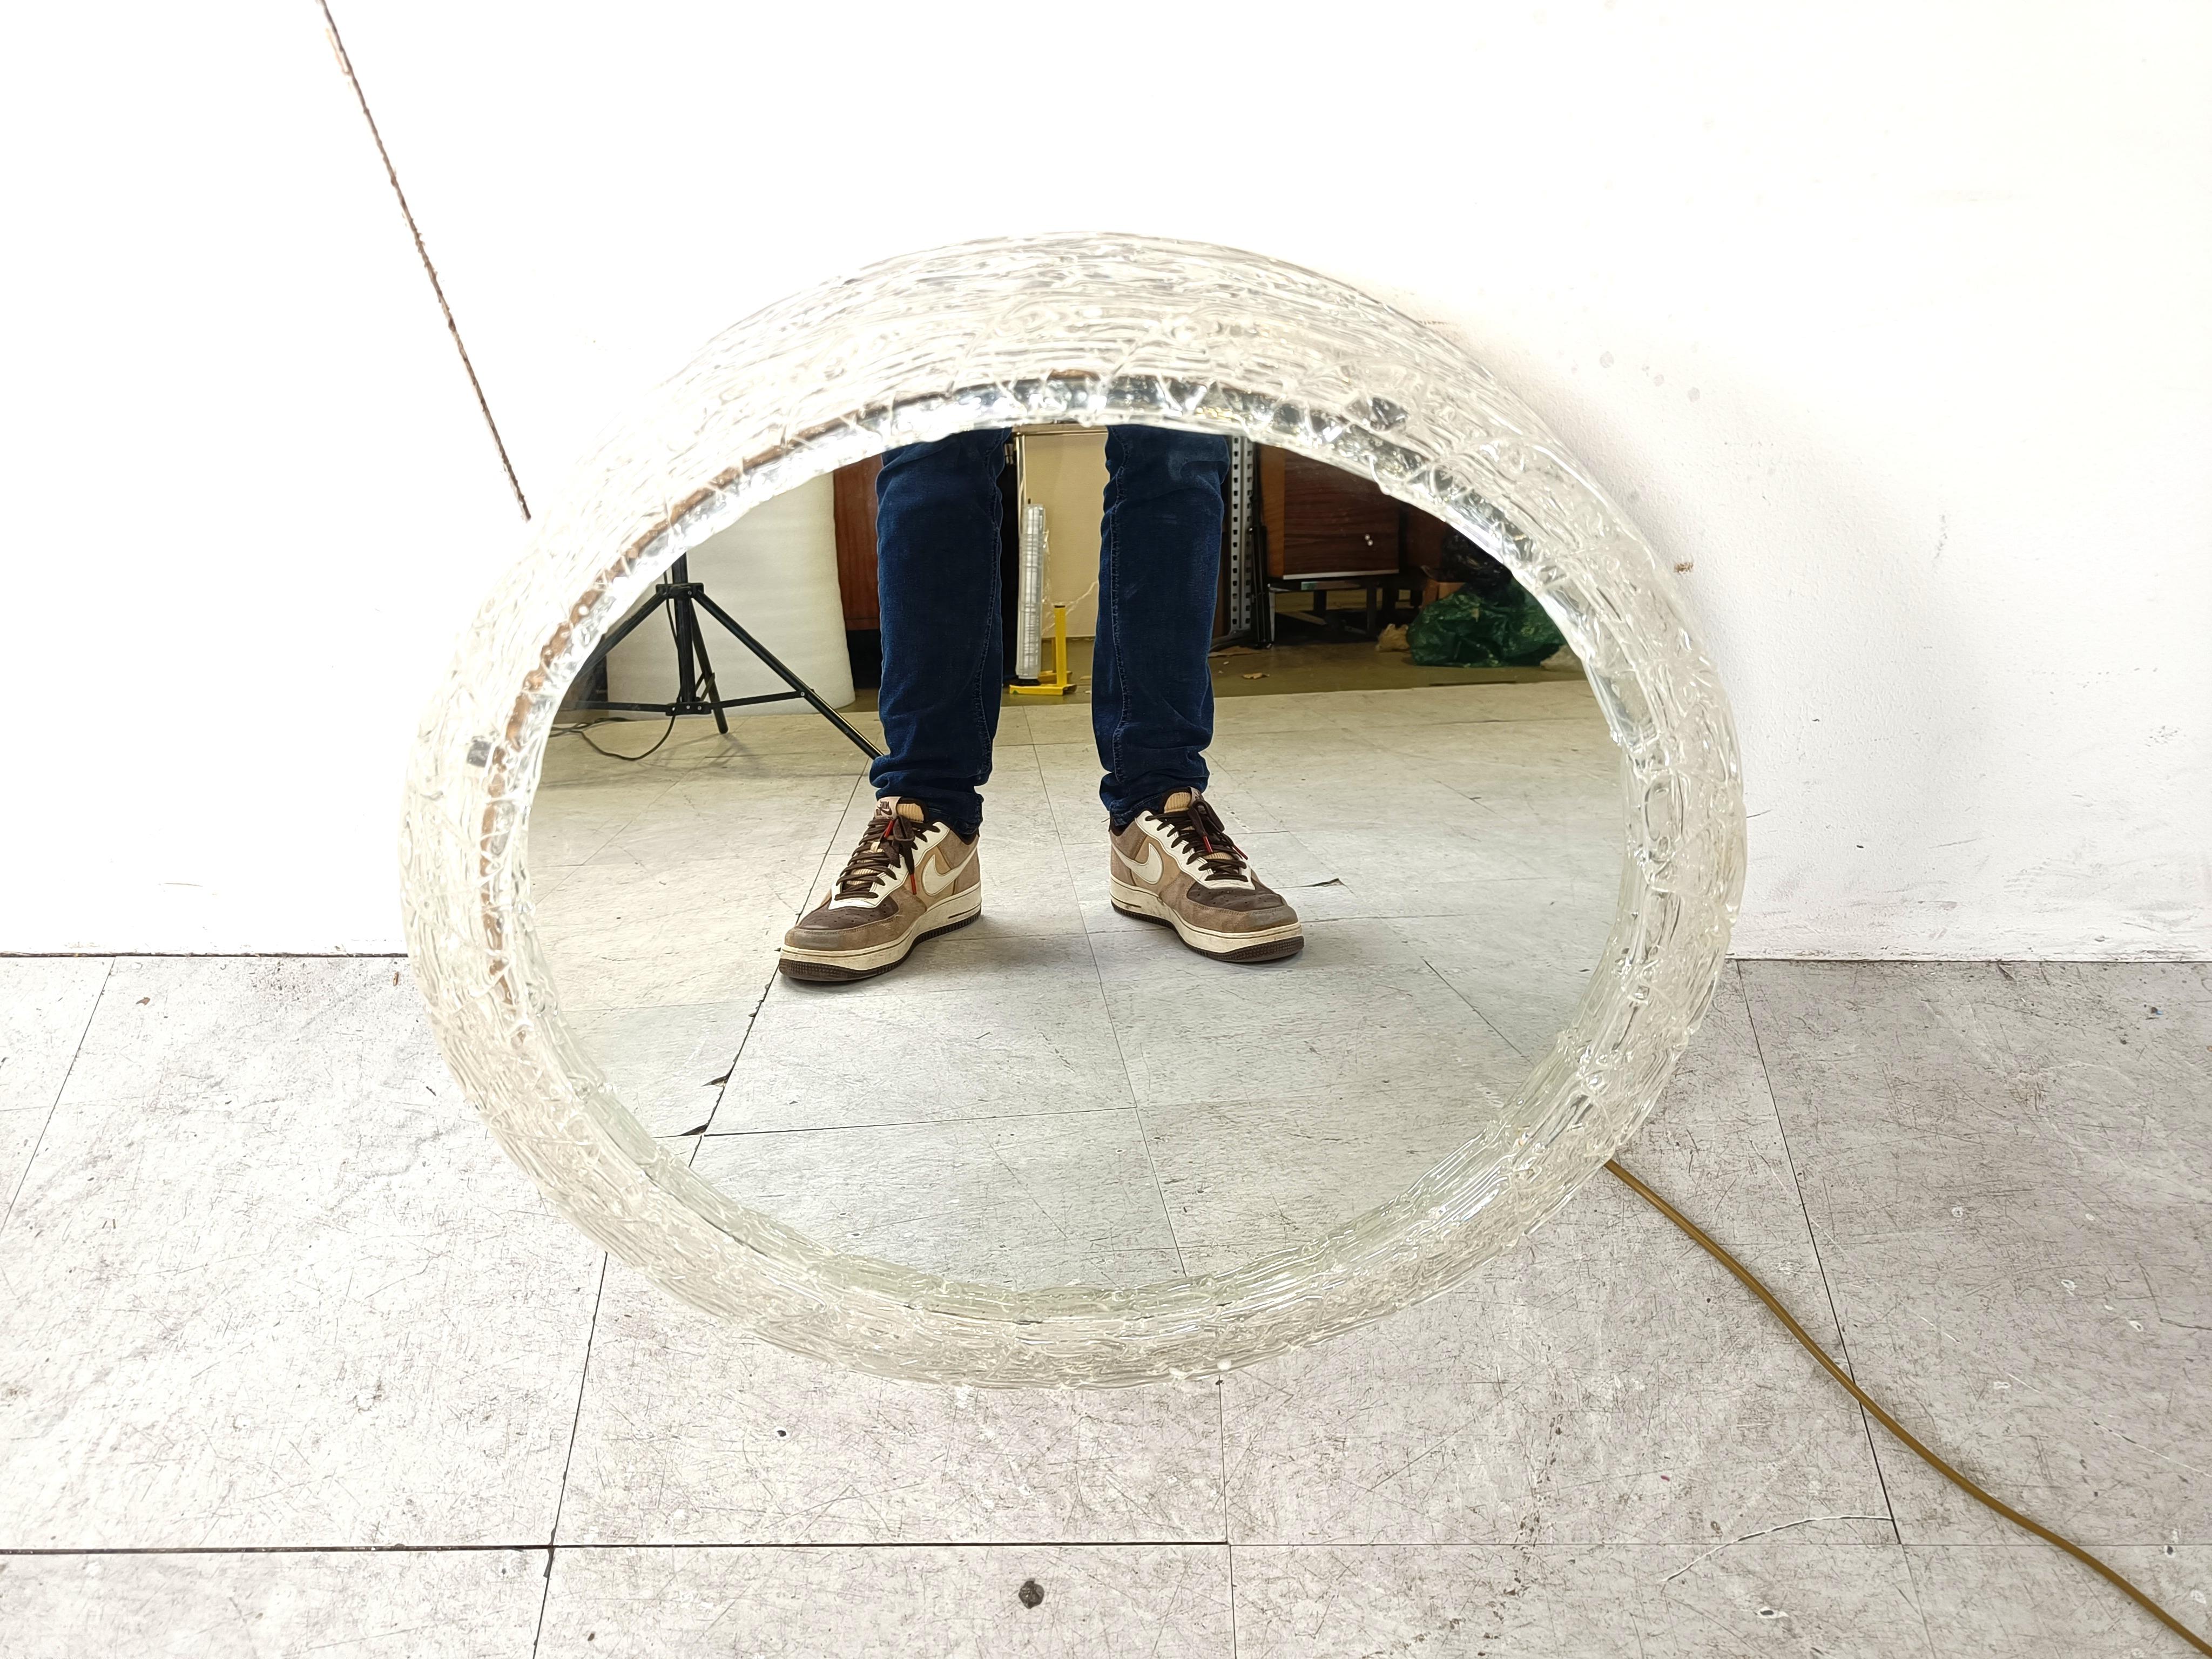 Hinterleuchteter Vintage-Spiegel mit Acrylrahmen und rundem Spiegelglas, hergestellt in Deutschland in den 1970er Jahren.

Geprüft und einsatzbereit.

Sehr begehrter Vintage-Spiegel.

1970er Jahre - Deutschland

Abmessungen:
Durchmesser: 50cm

Ref.: